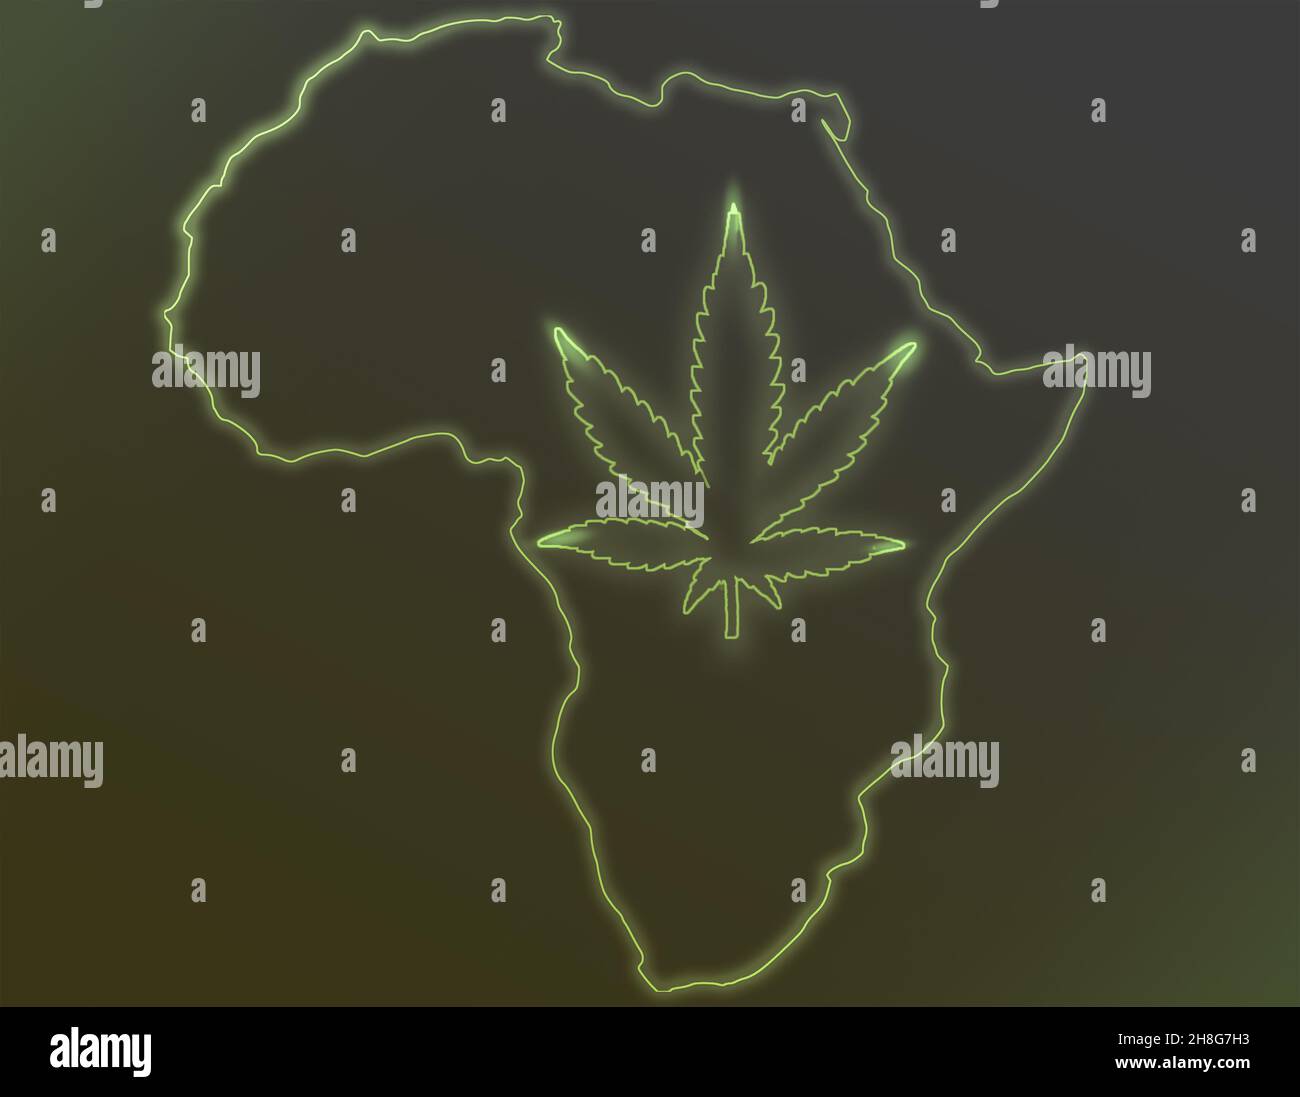 Der afrikanische Kontinent mit einem Cannabisblatt auf einem dunklen Hintergrund. Das Konzept des Anbaus von medizinischem Cannabis in Afrika. Neon leuchtendes Cannabis-Symbol Stockfoto